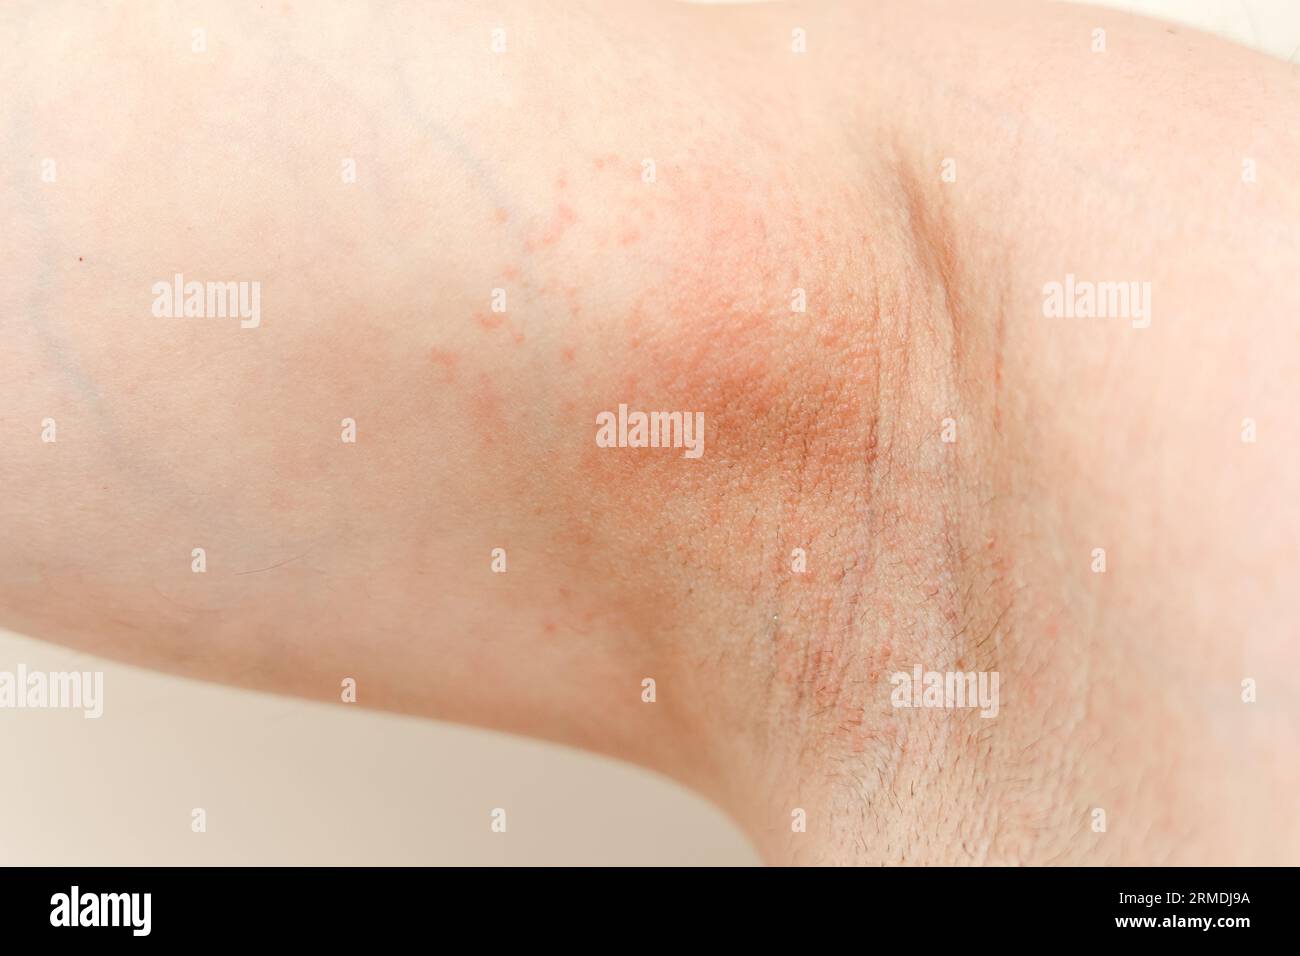 Allergie aux aisselles. Photo recadrée d'irritation, d'inflammation sur la  peau sensible après utilisation d'un rasoir, d'une tondeuse, d'un déodorant  toxique ou d'un antisudorifique. Bras Photo Stock - Alamy